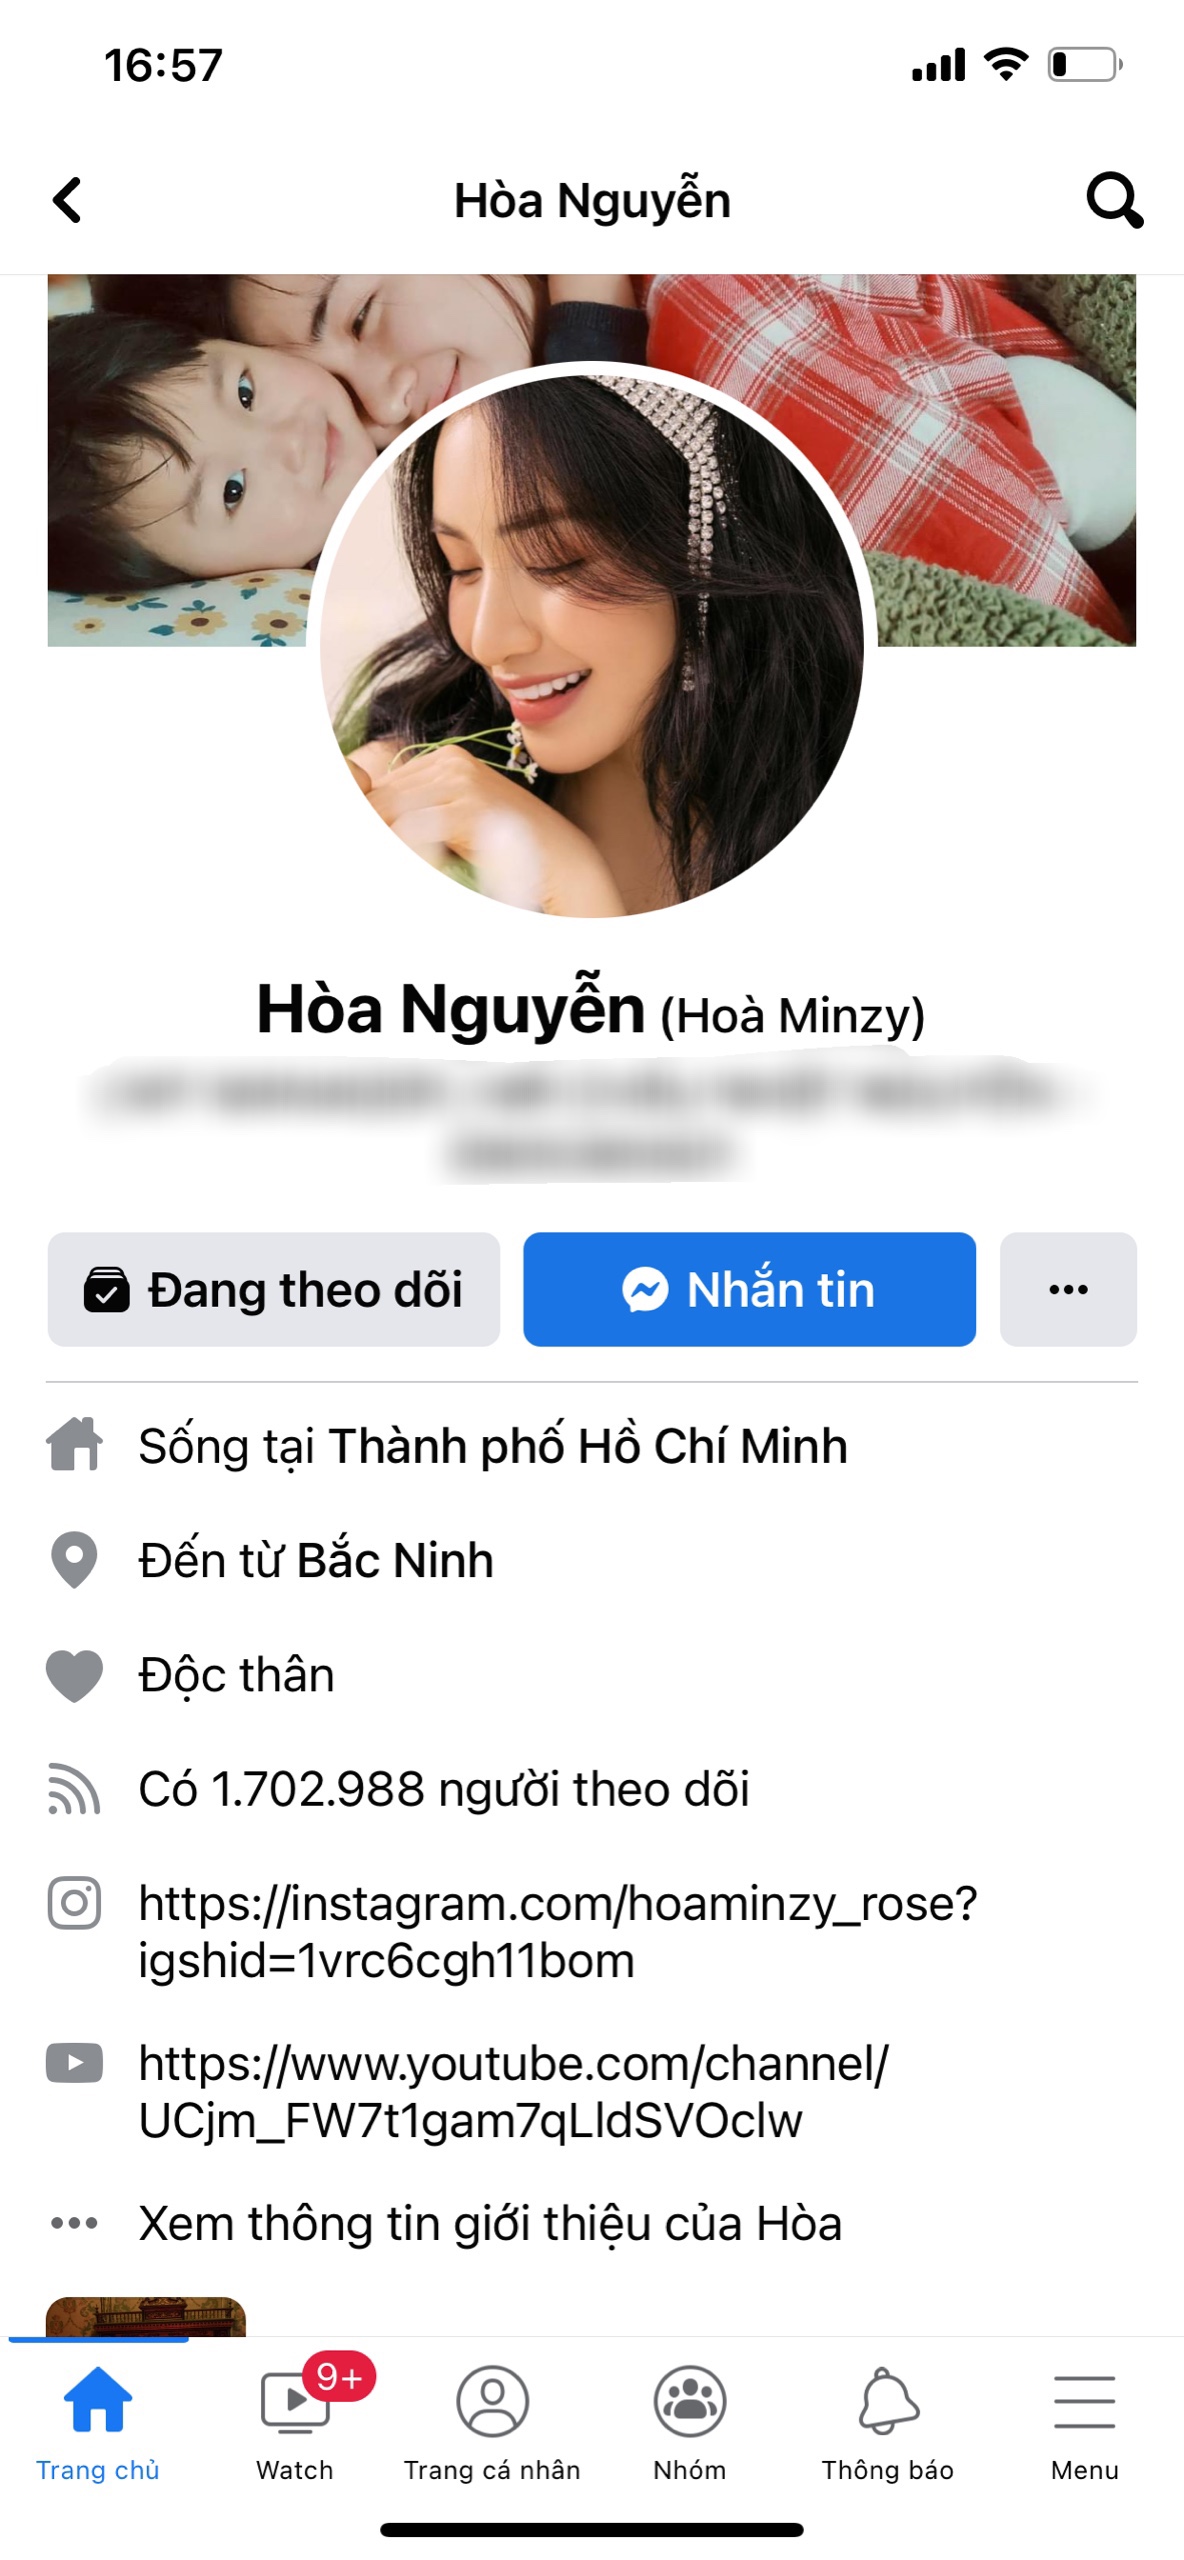 Hòa Minzy vẫn để chế độ độc thân trên tài khoản Facebook cá nhân